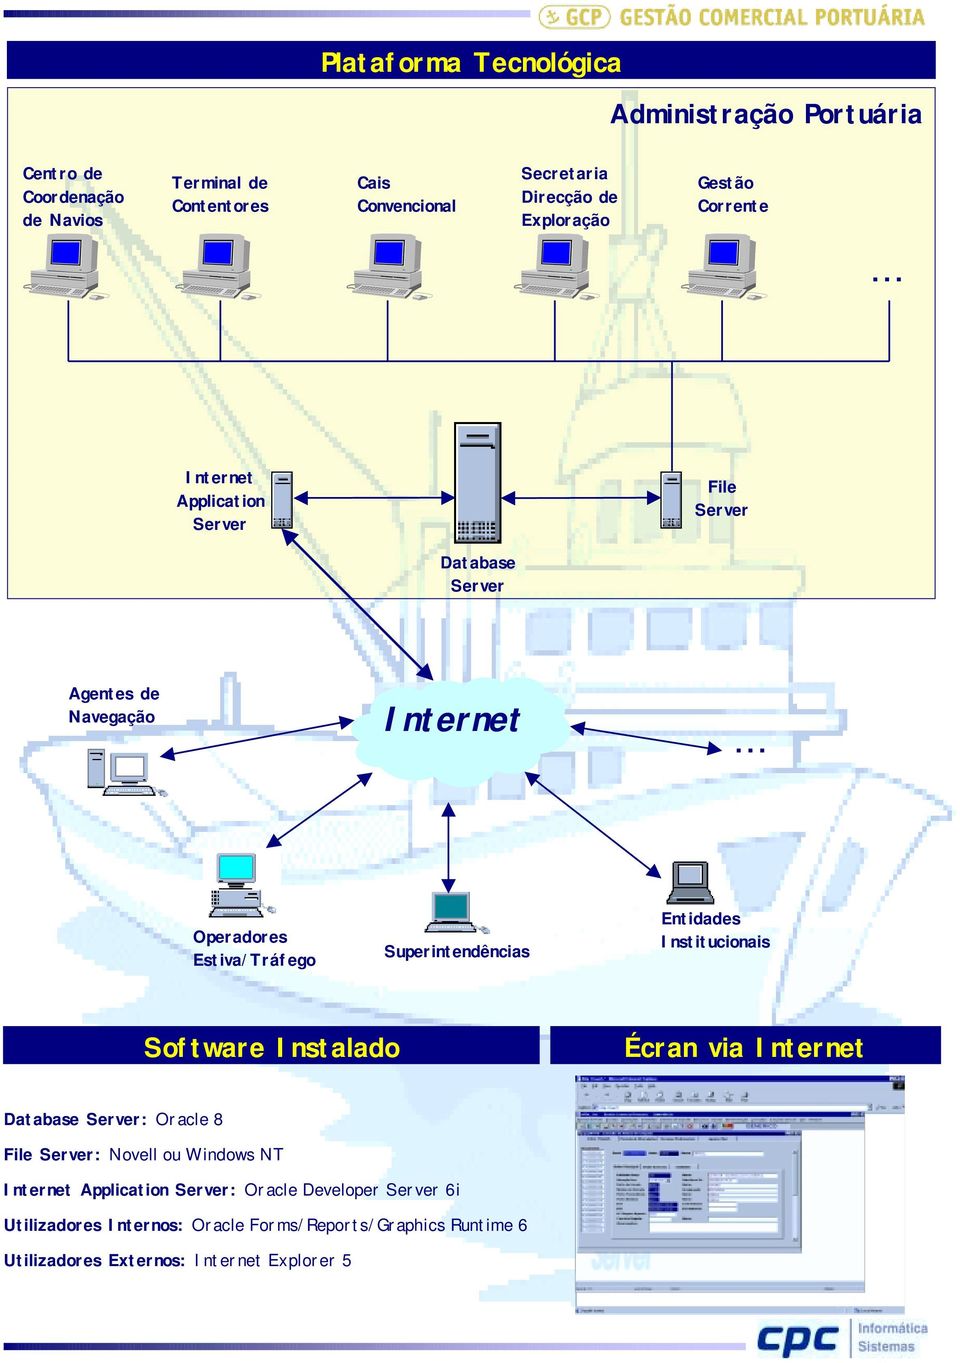 Institucionais Software Instalado Écran via Internet Database Server: Oracle 8 File Server: Novell ou Windows NT Internet